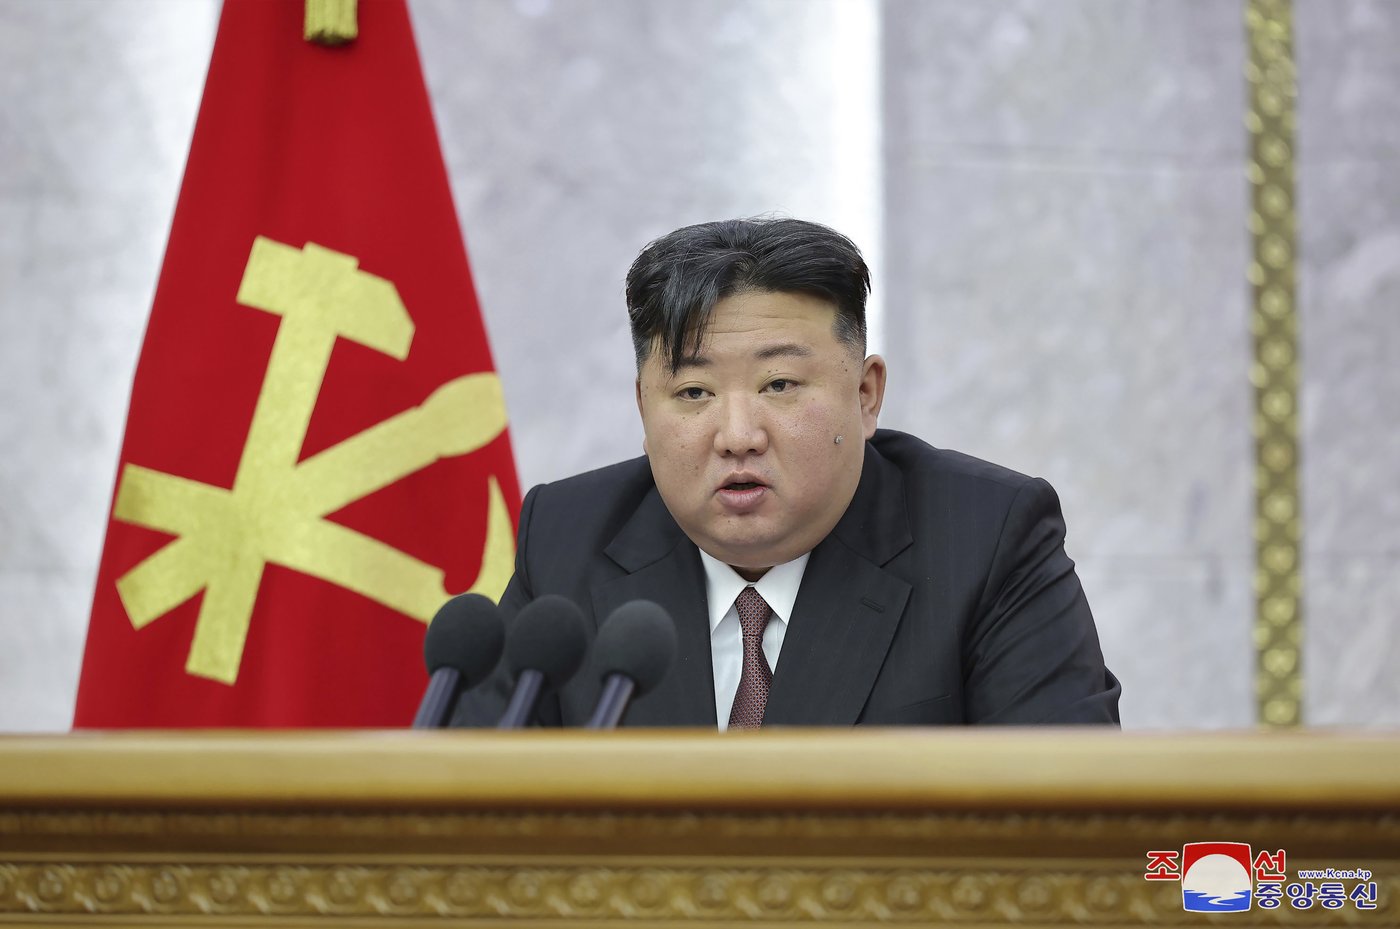 Les responsables nord-coréens chercheraient des médicaments pour traiter Kim Jong-un